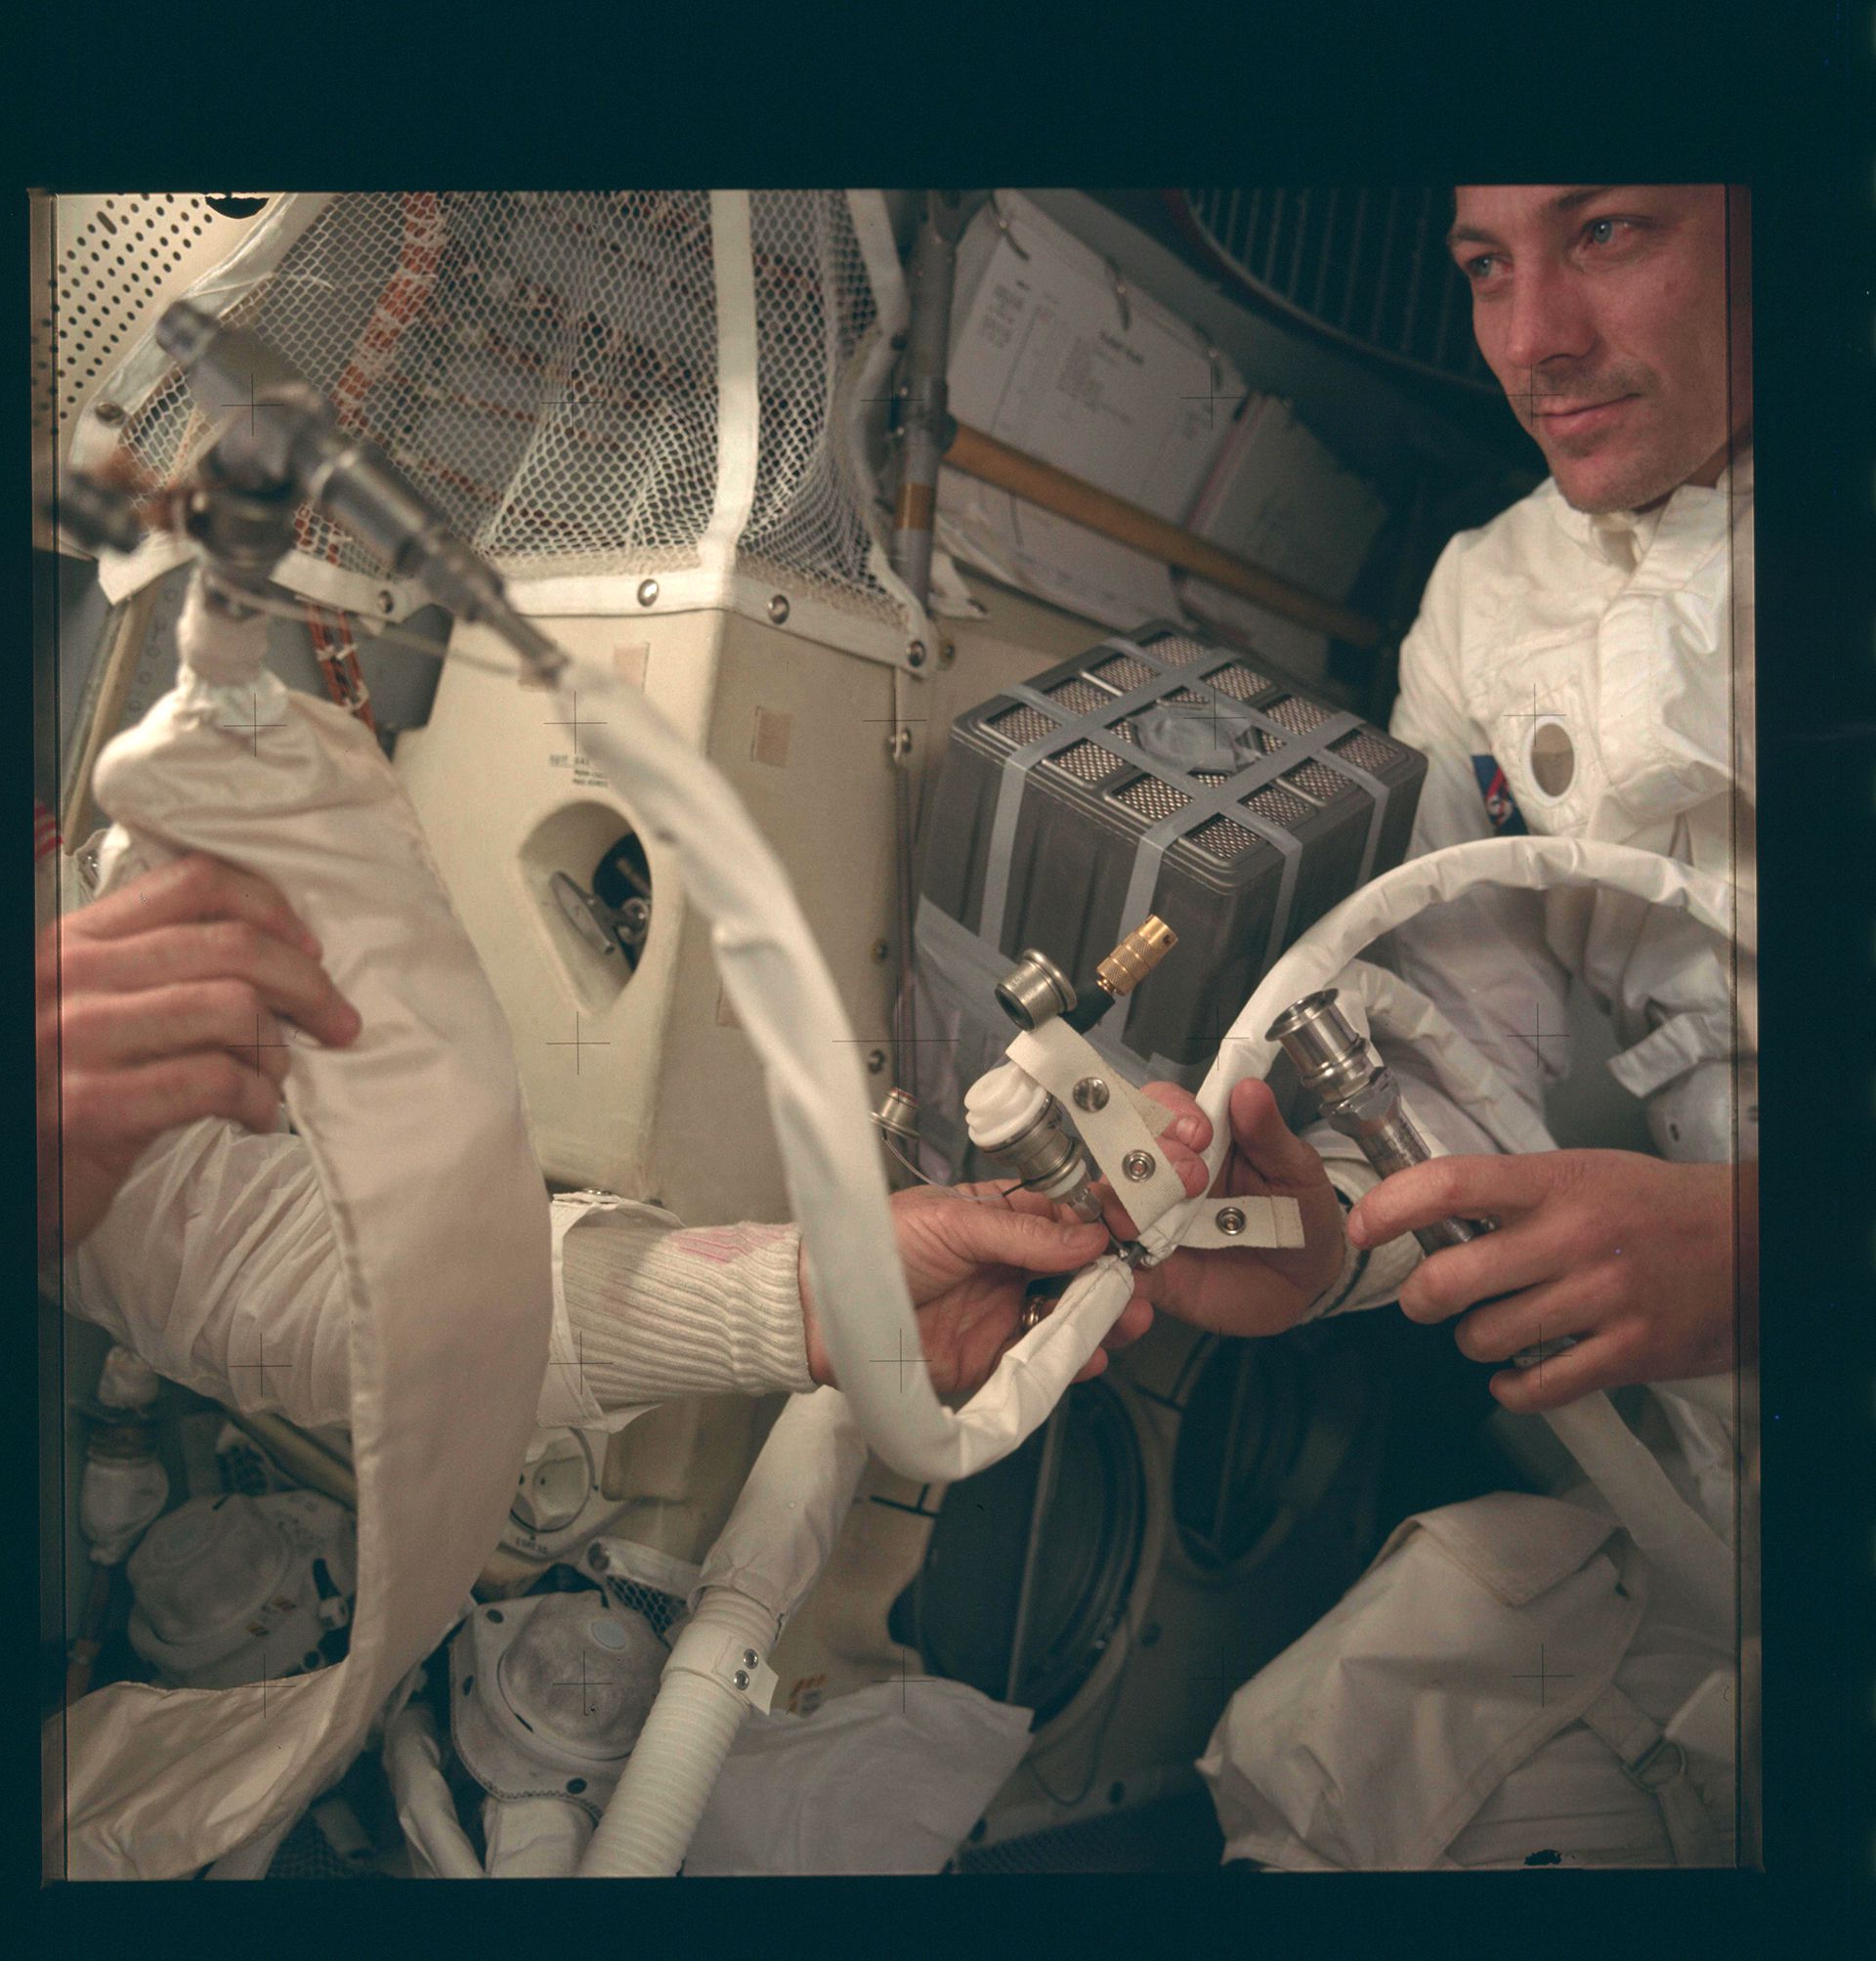 El astronauta John L. Swigert Jr, piloto del módulo de comando en el momento del armado del filtro que los ayudó a mantenerse con vida durante el accidentado viaje de la misión Apollo 13 (Reuters)